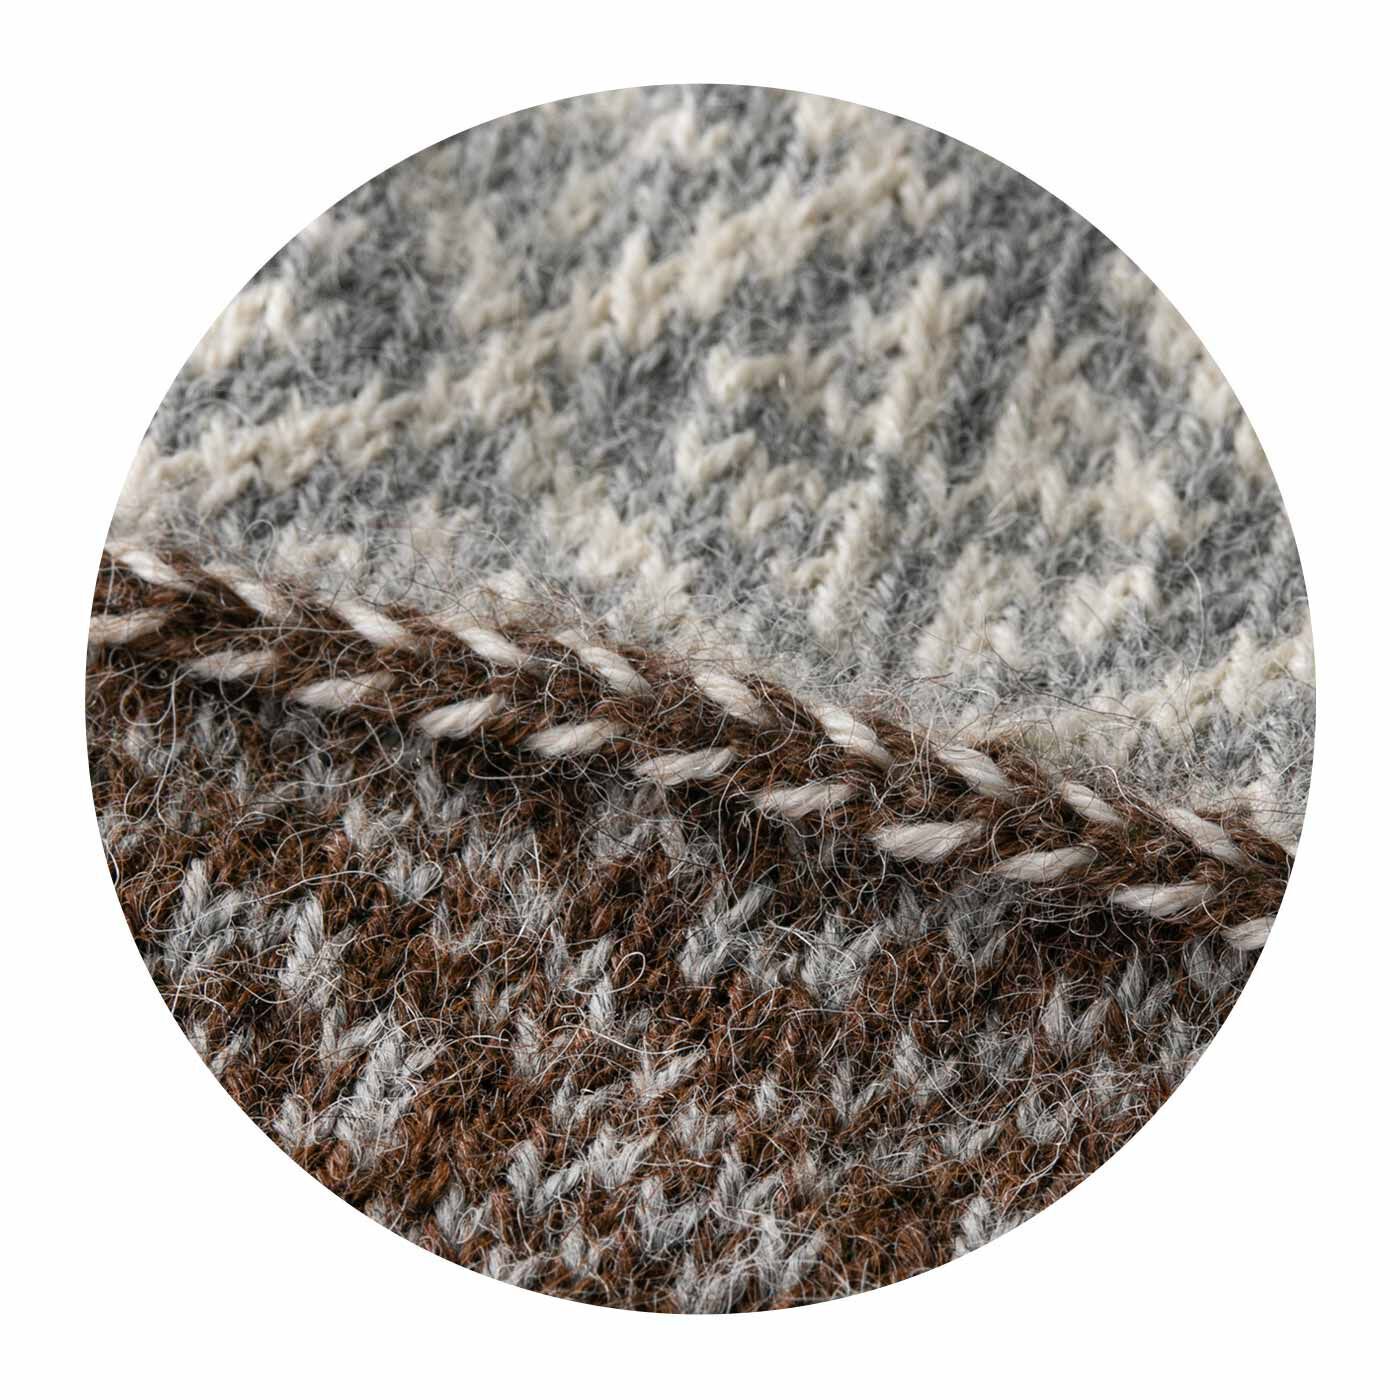 クチュリエ|アルパカの原毛糸 あったかなめらか ゆび出しミトンの会|原毛の滑らかさ、ナチュラルな色と風合いを生かした美しい模様にうっとり。